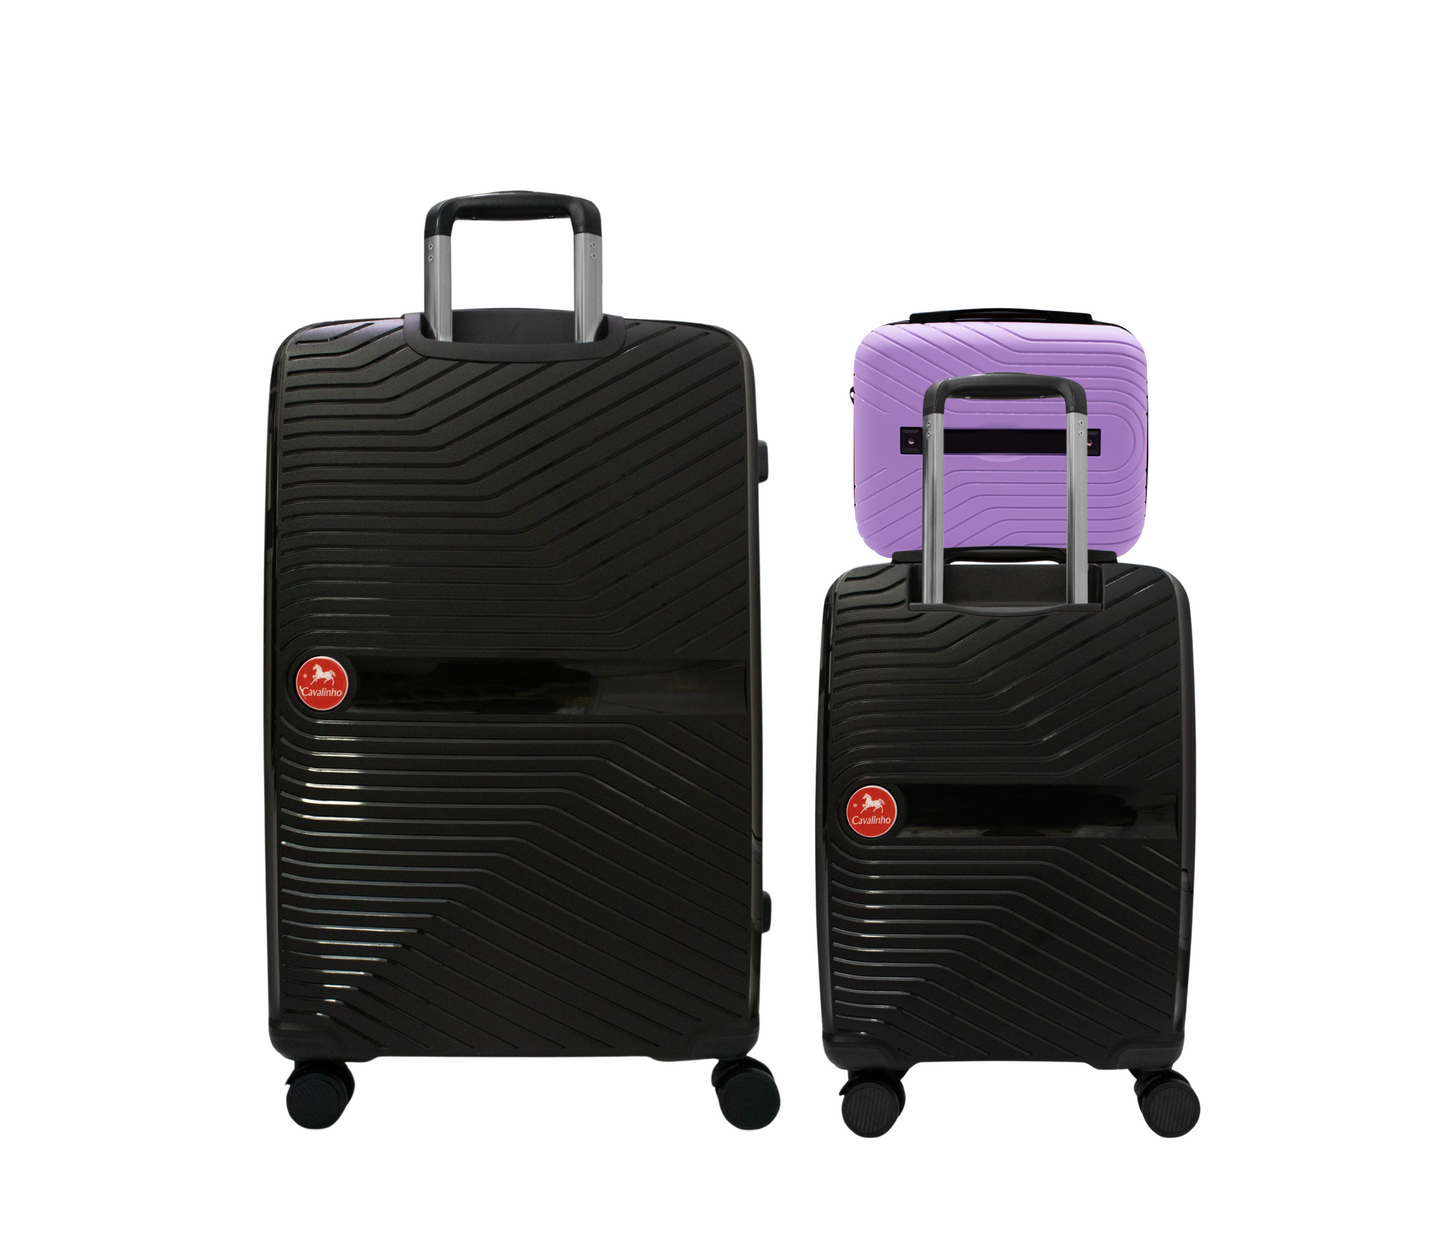 Cavalinho Canada & USA Colorful 3 Piece Luggage Set (15", 19" & 28") - Lilac Black Black - 68020004.390101.S151928._3